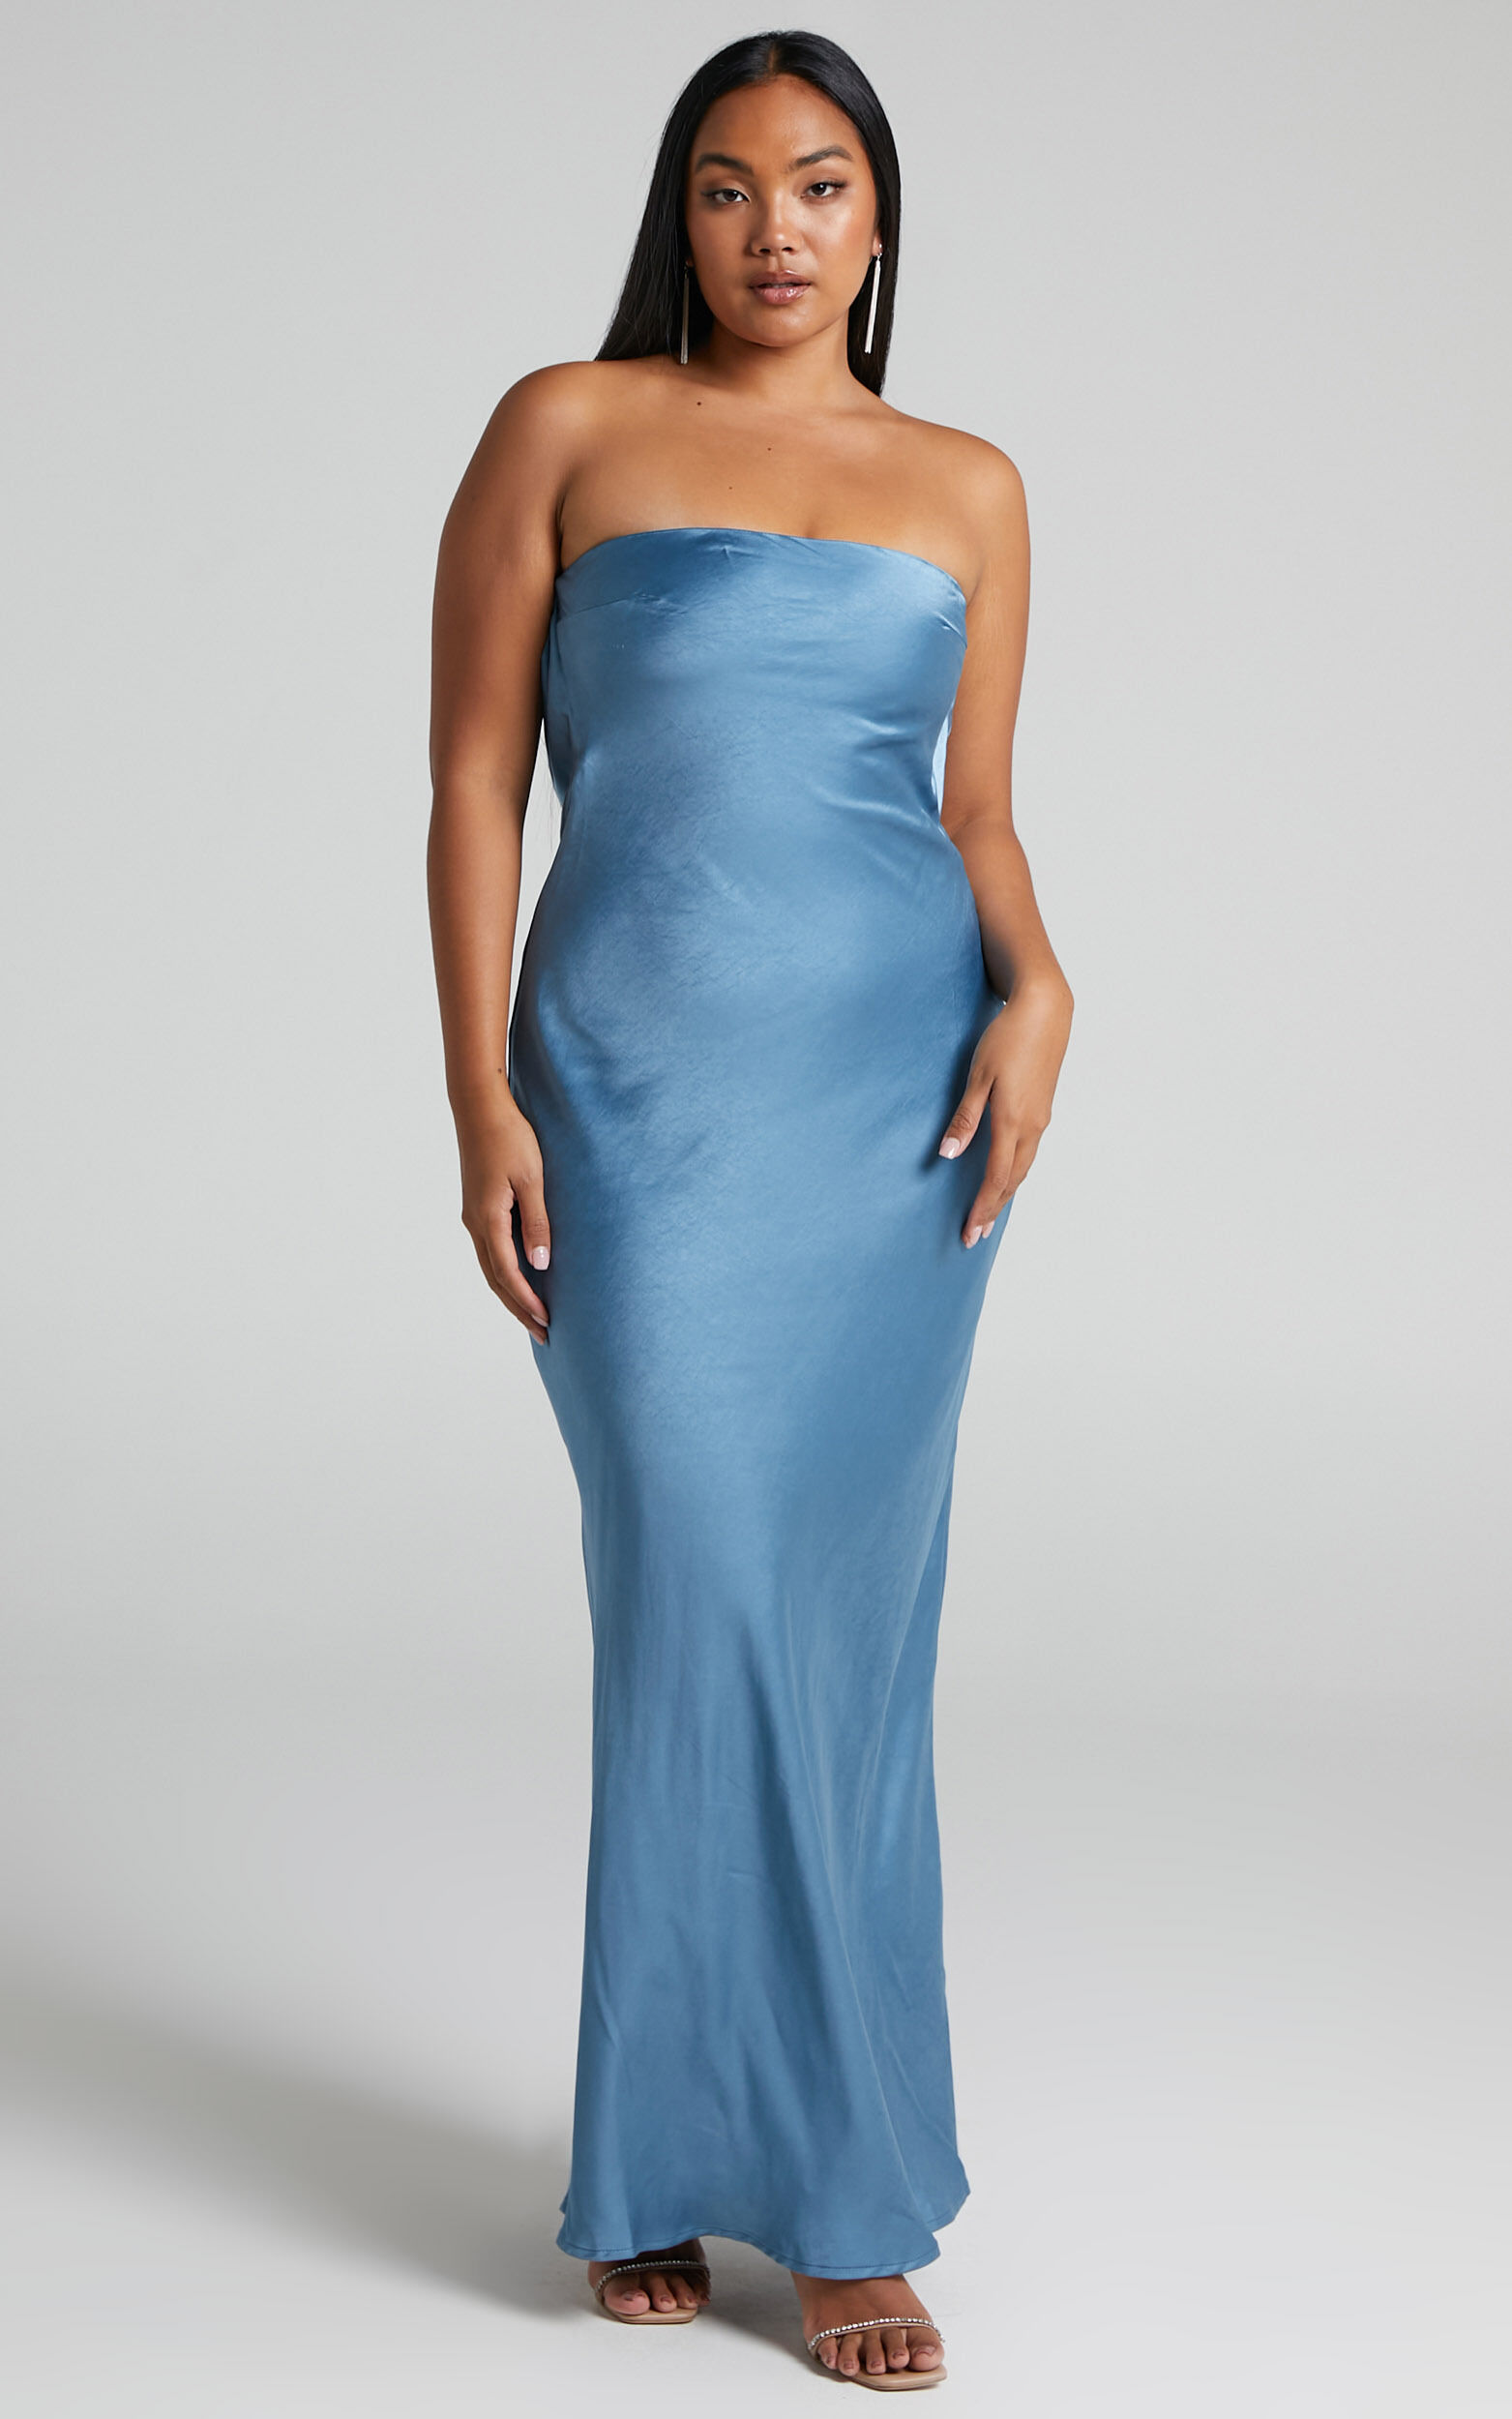 Supergünstige Sammlung! Charlita Maxi Satin USA | Back Steel in Strapless - Blue Cowl Dress Dress Showpo